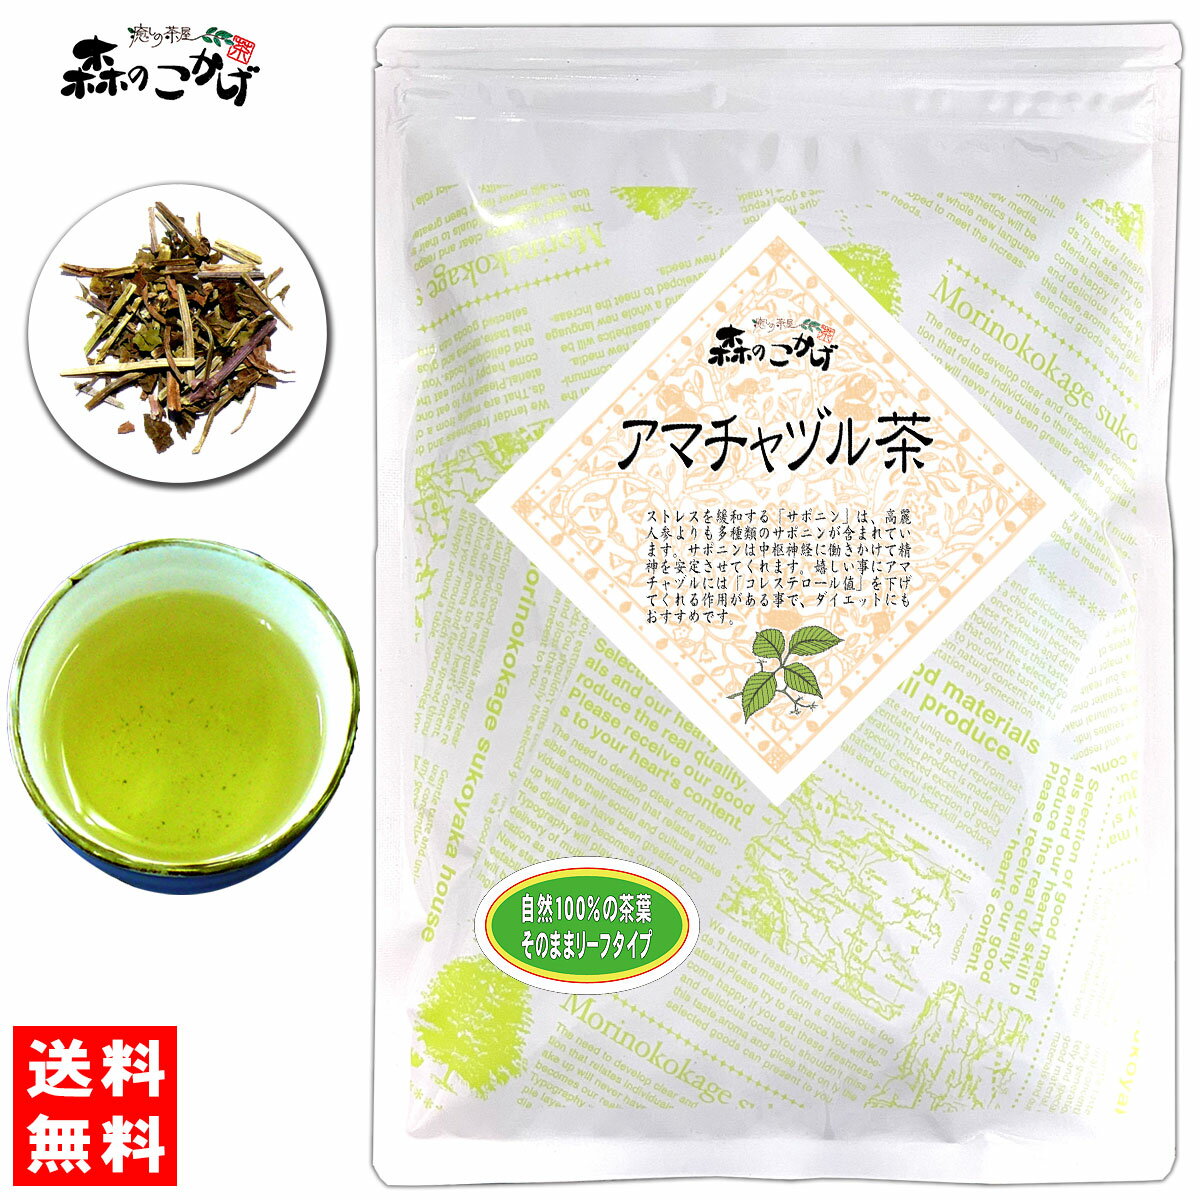 5 アマチャヅル茶 (120g) 茶葉 (アマチャズル) あまちゃずる 健康茶 (残留農薬検査済み) 北海道 沖縄 離島も無料配送可 森のこかげ 健やかハウス 健リフ